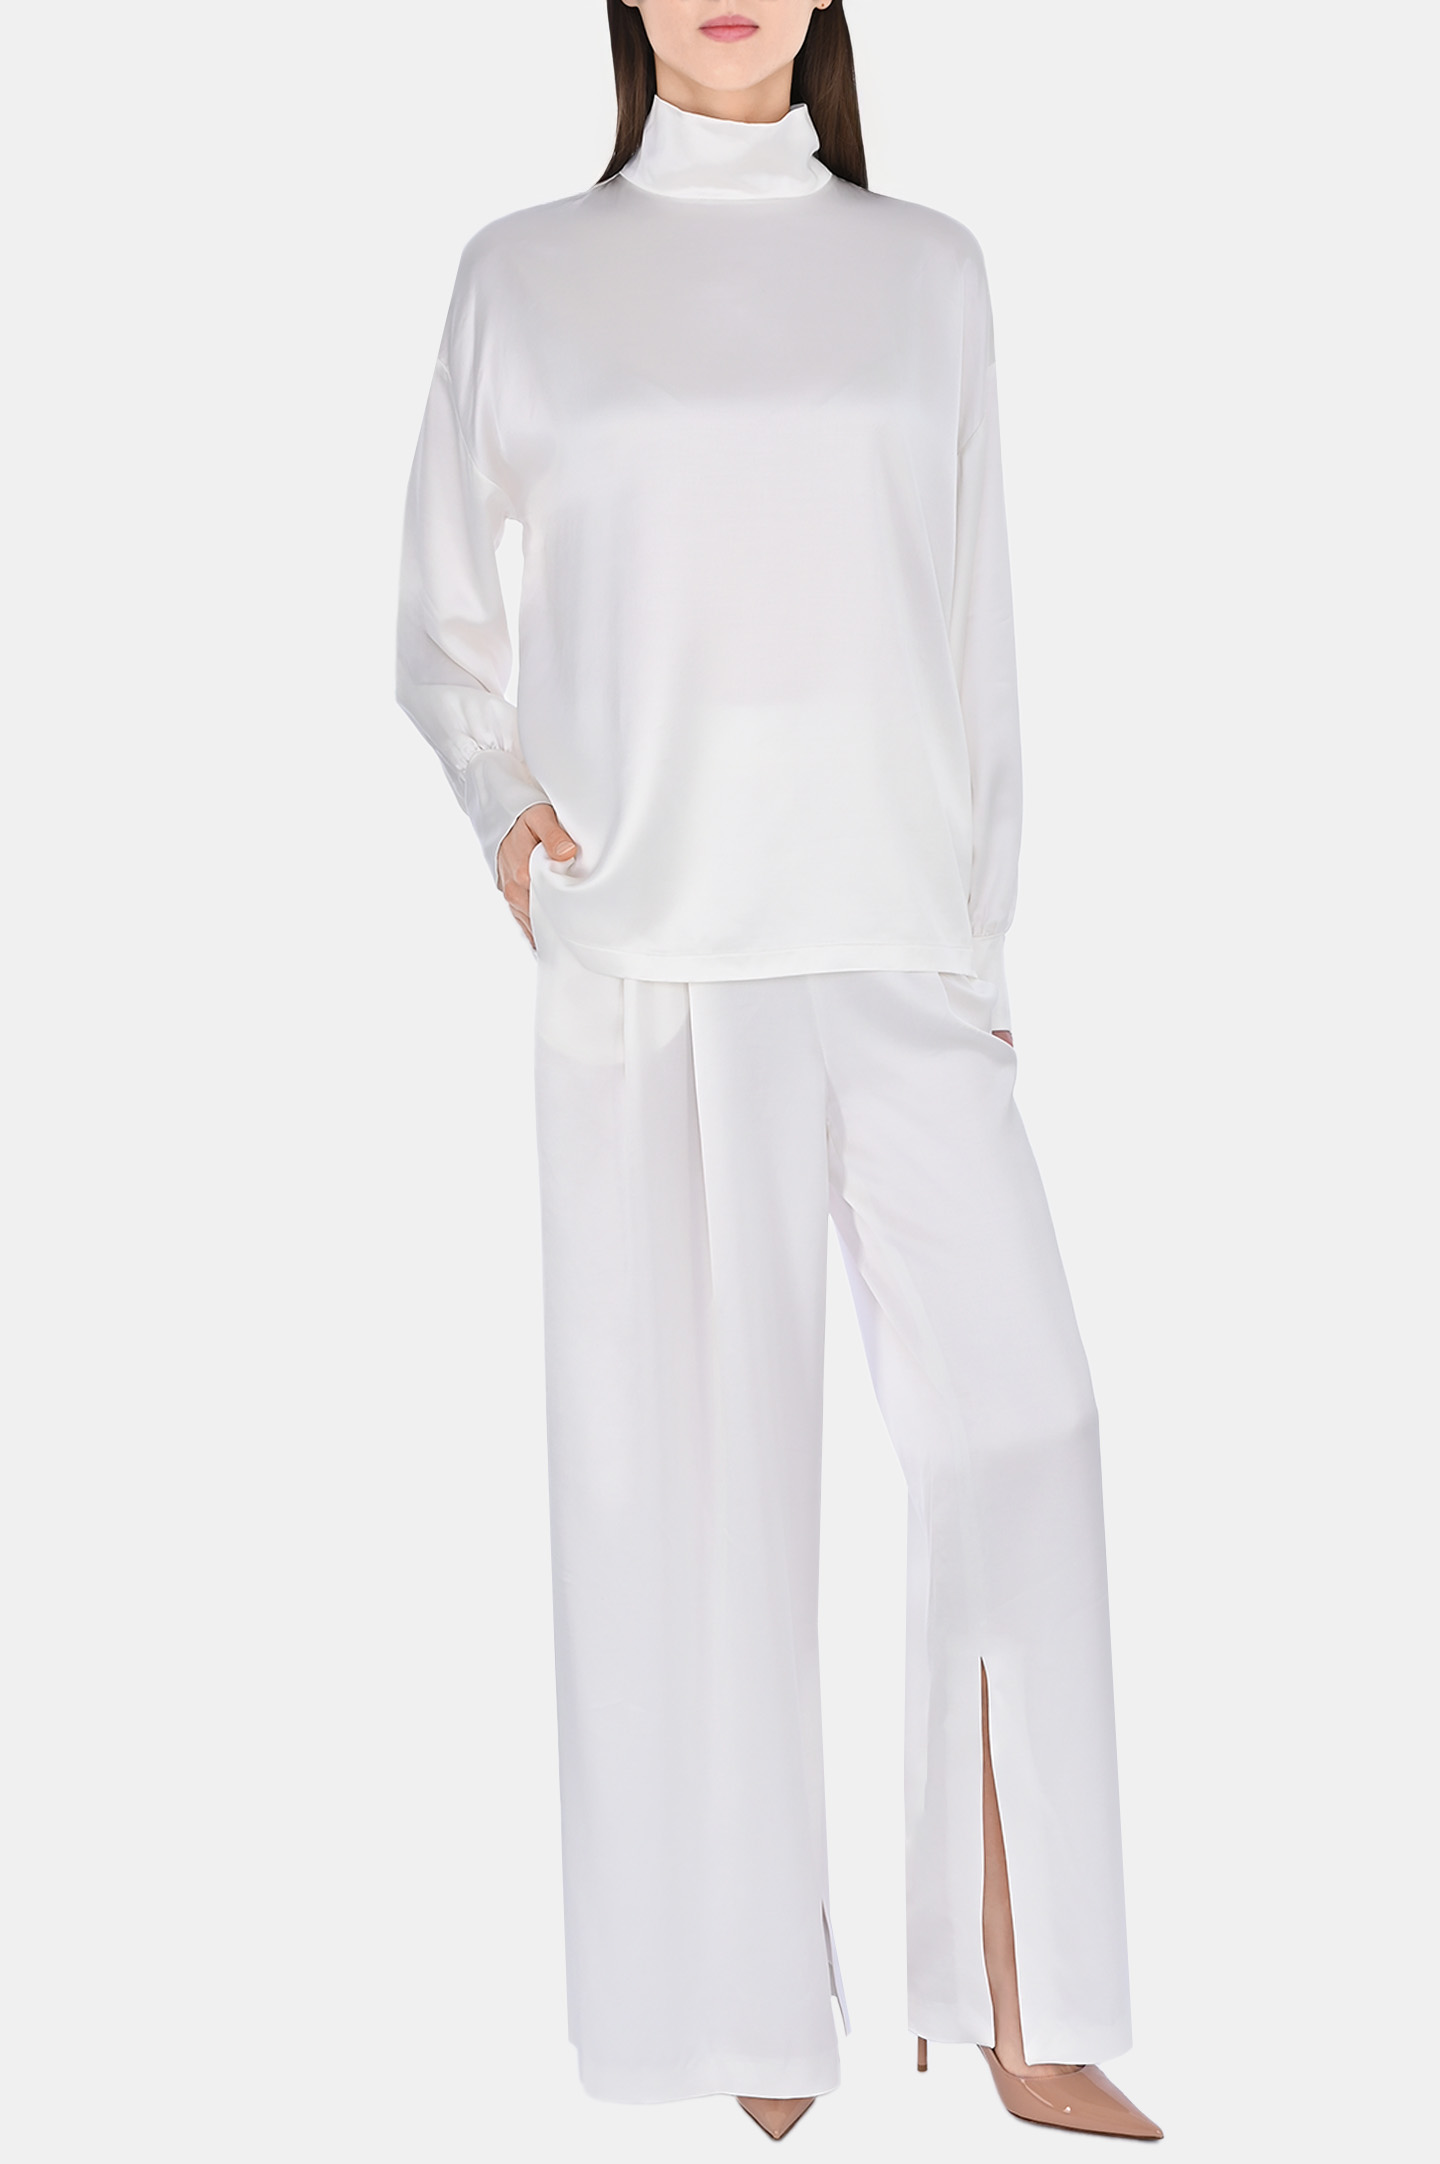 Блуза FABIANA FILIPPI TPD223F605, цвет: Белый, Женский